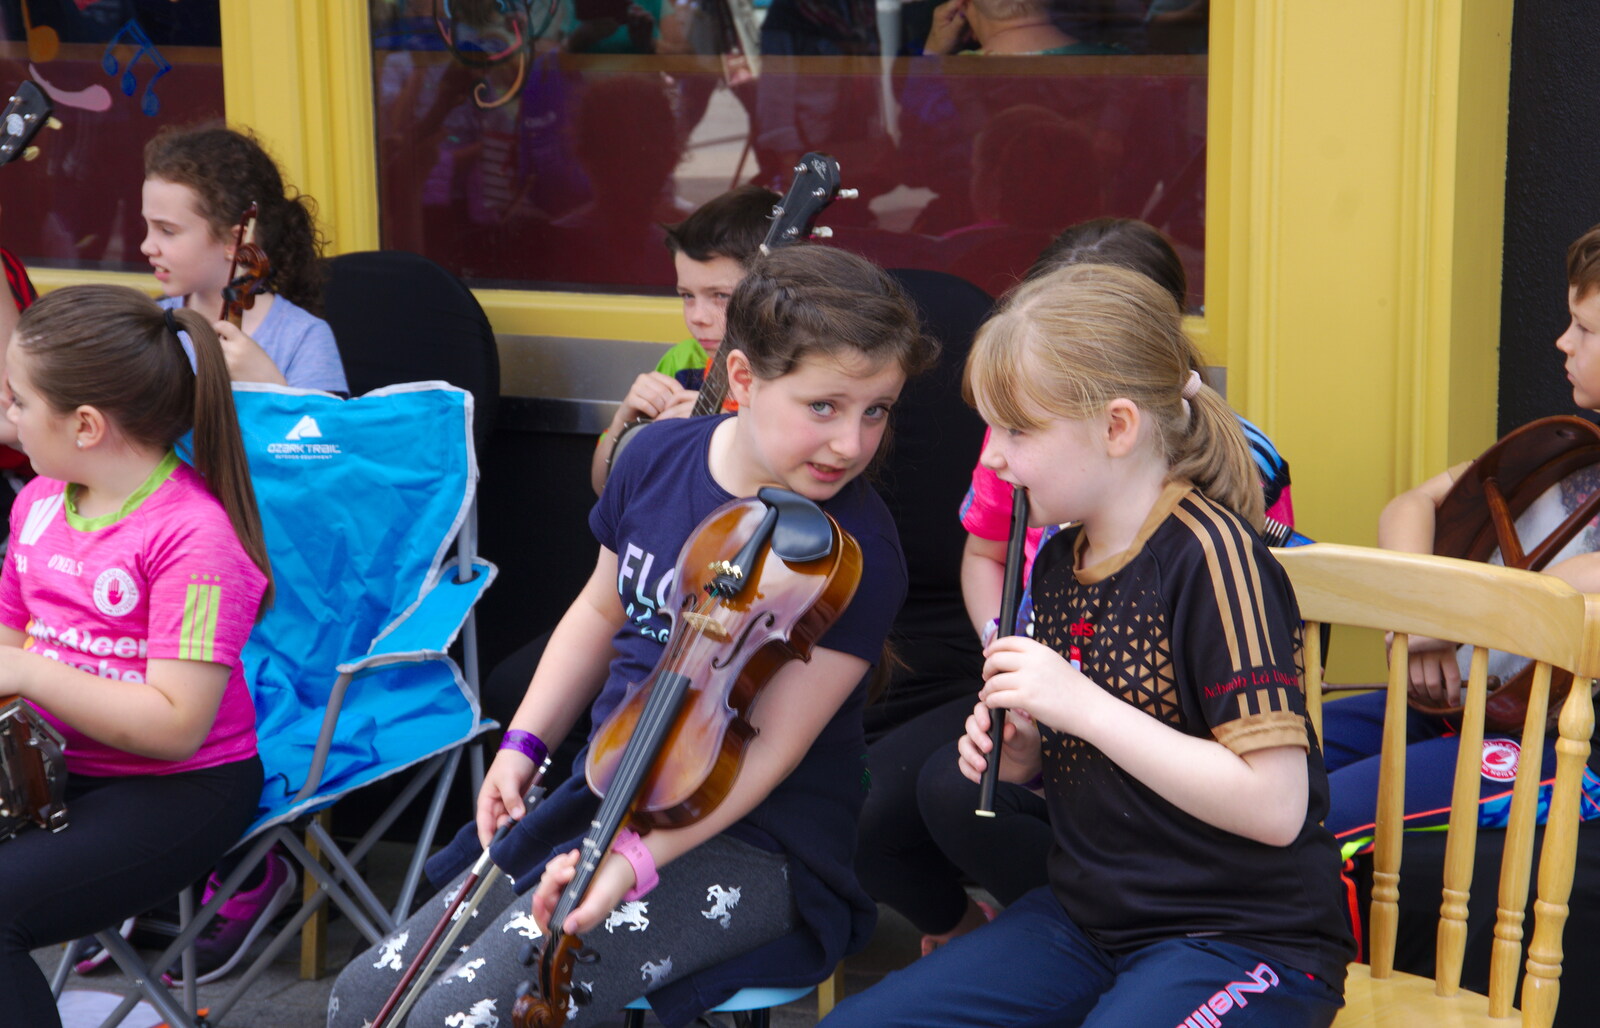 A couple of girls swap musical tips from The Fleadh Cheoil na hÉireann, Droichead Átha, Co. Louth, Ireland - 13th August 2019